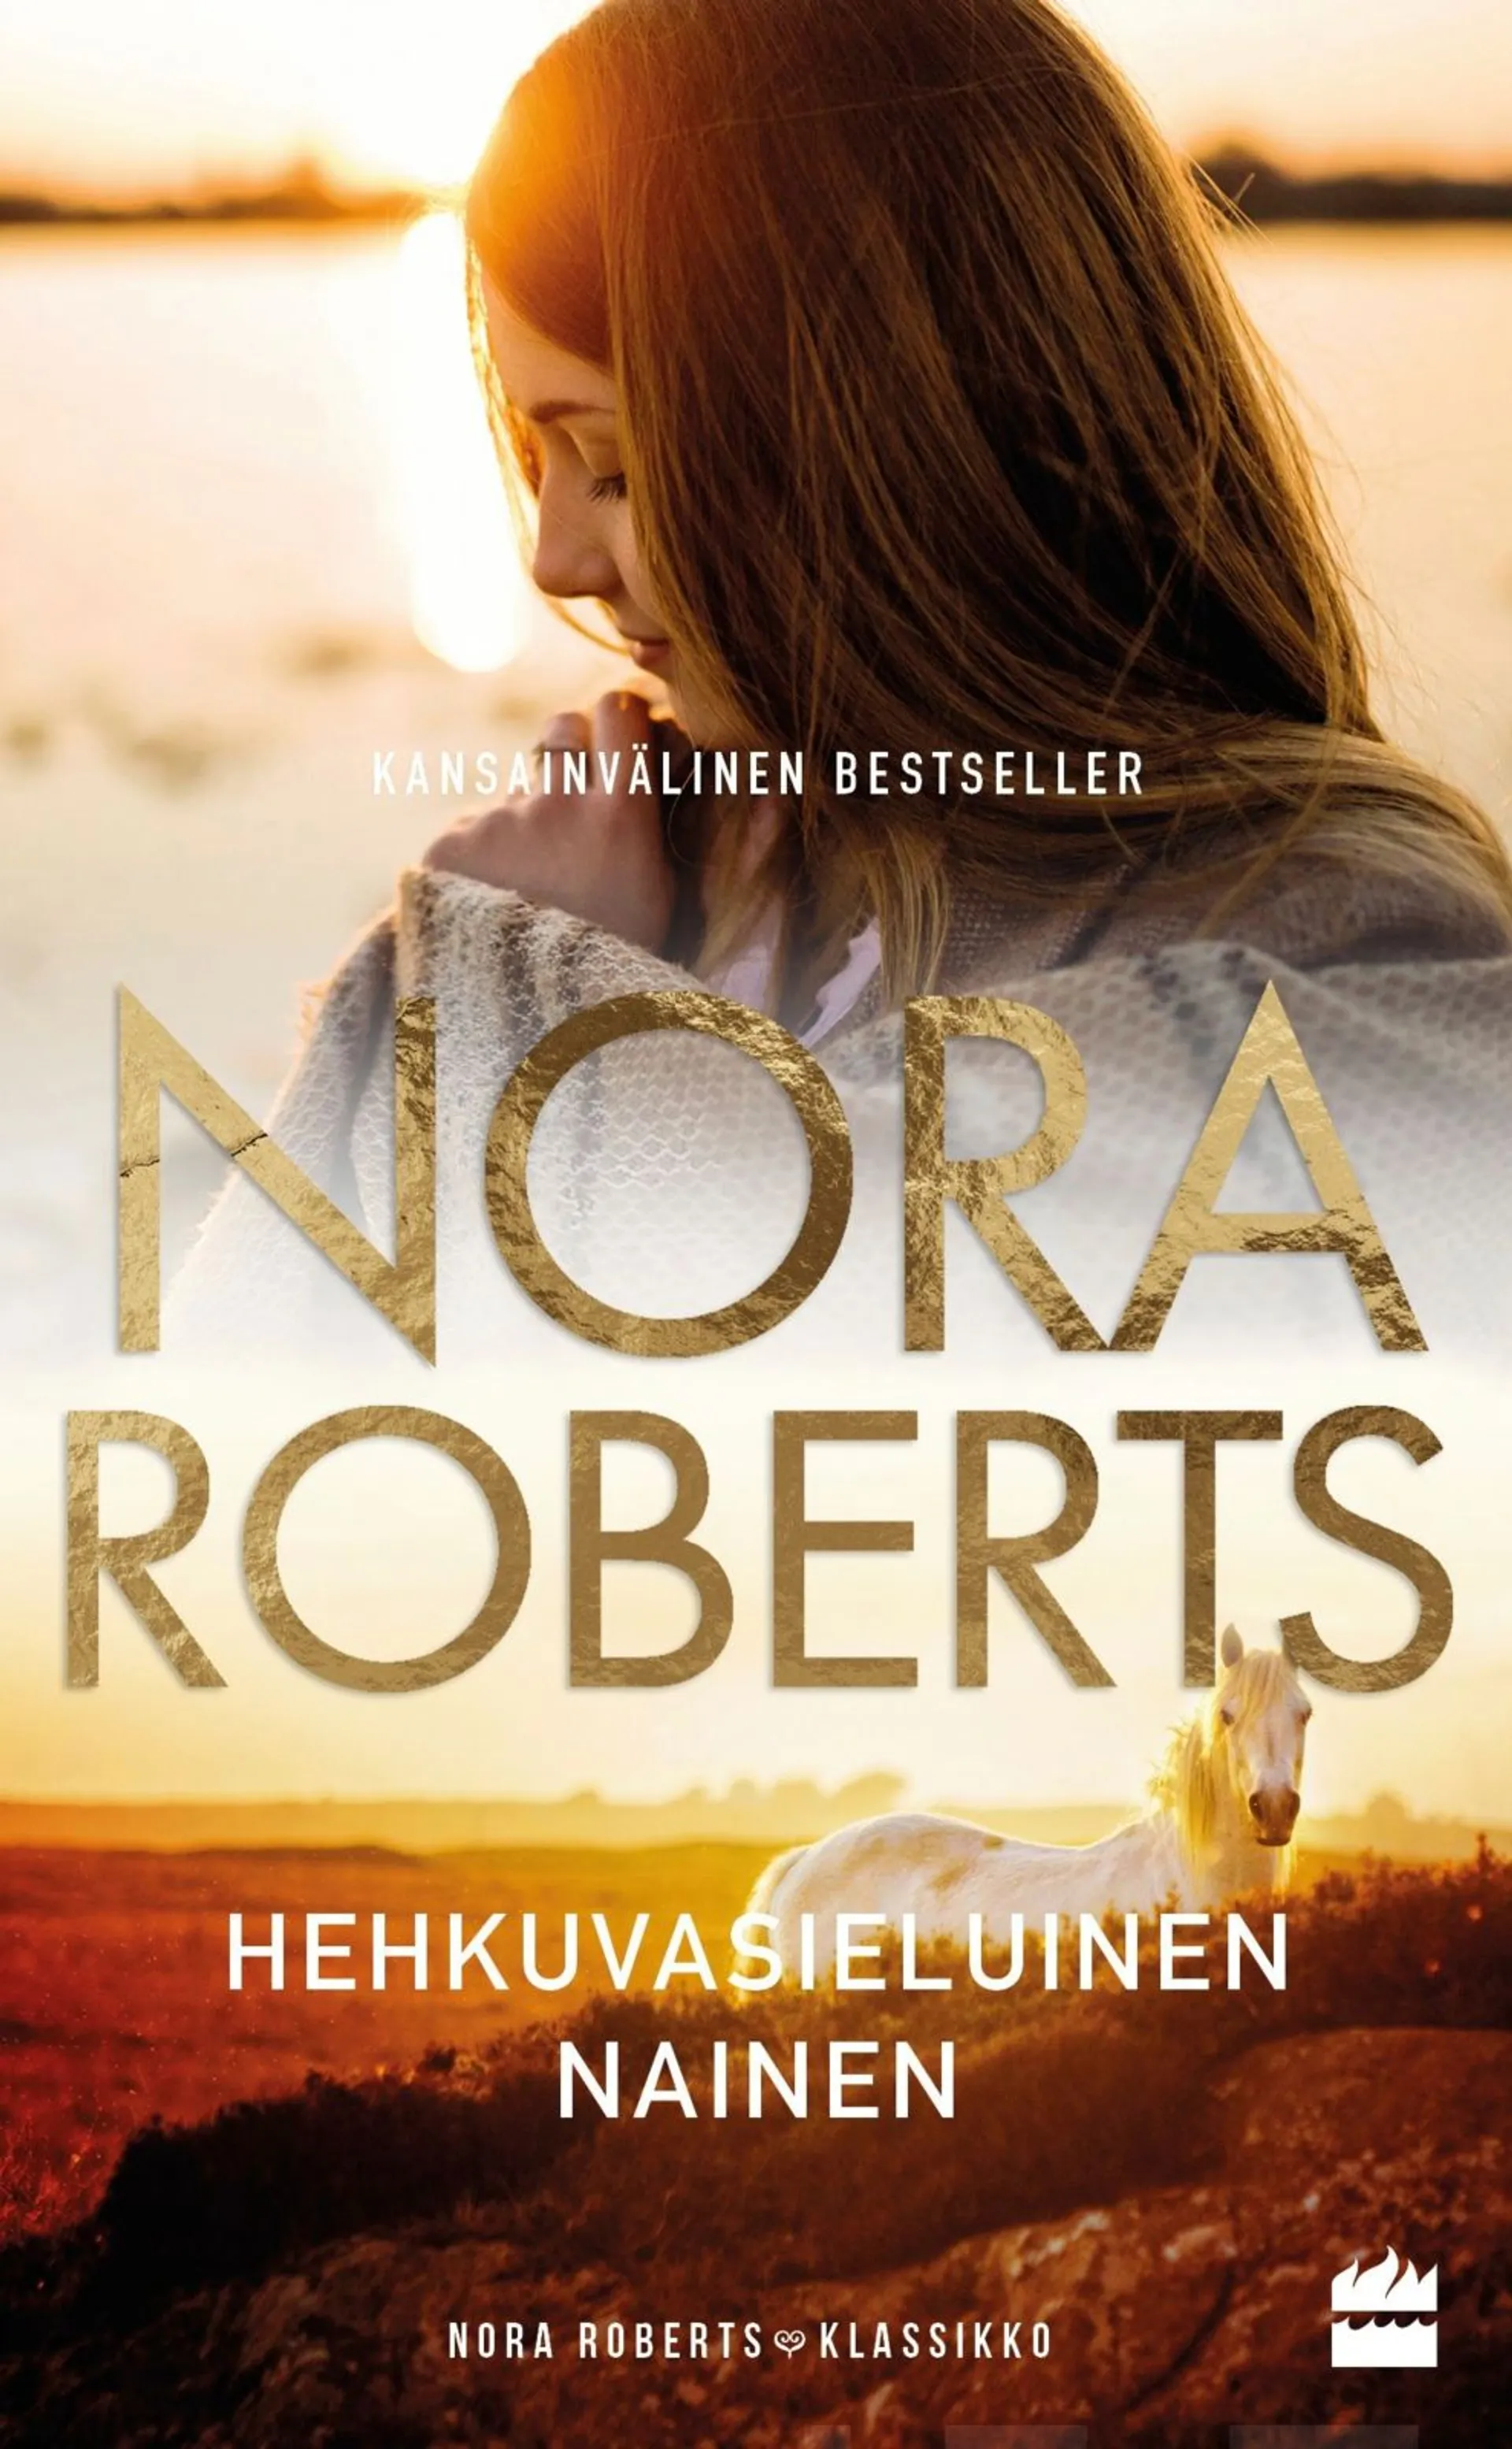 Roberts, Nora: Hehkuvasieluinen nainen